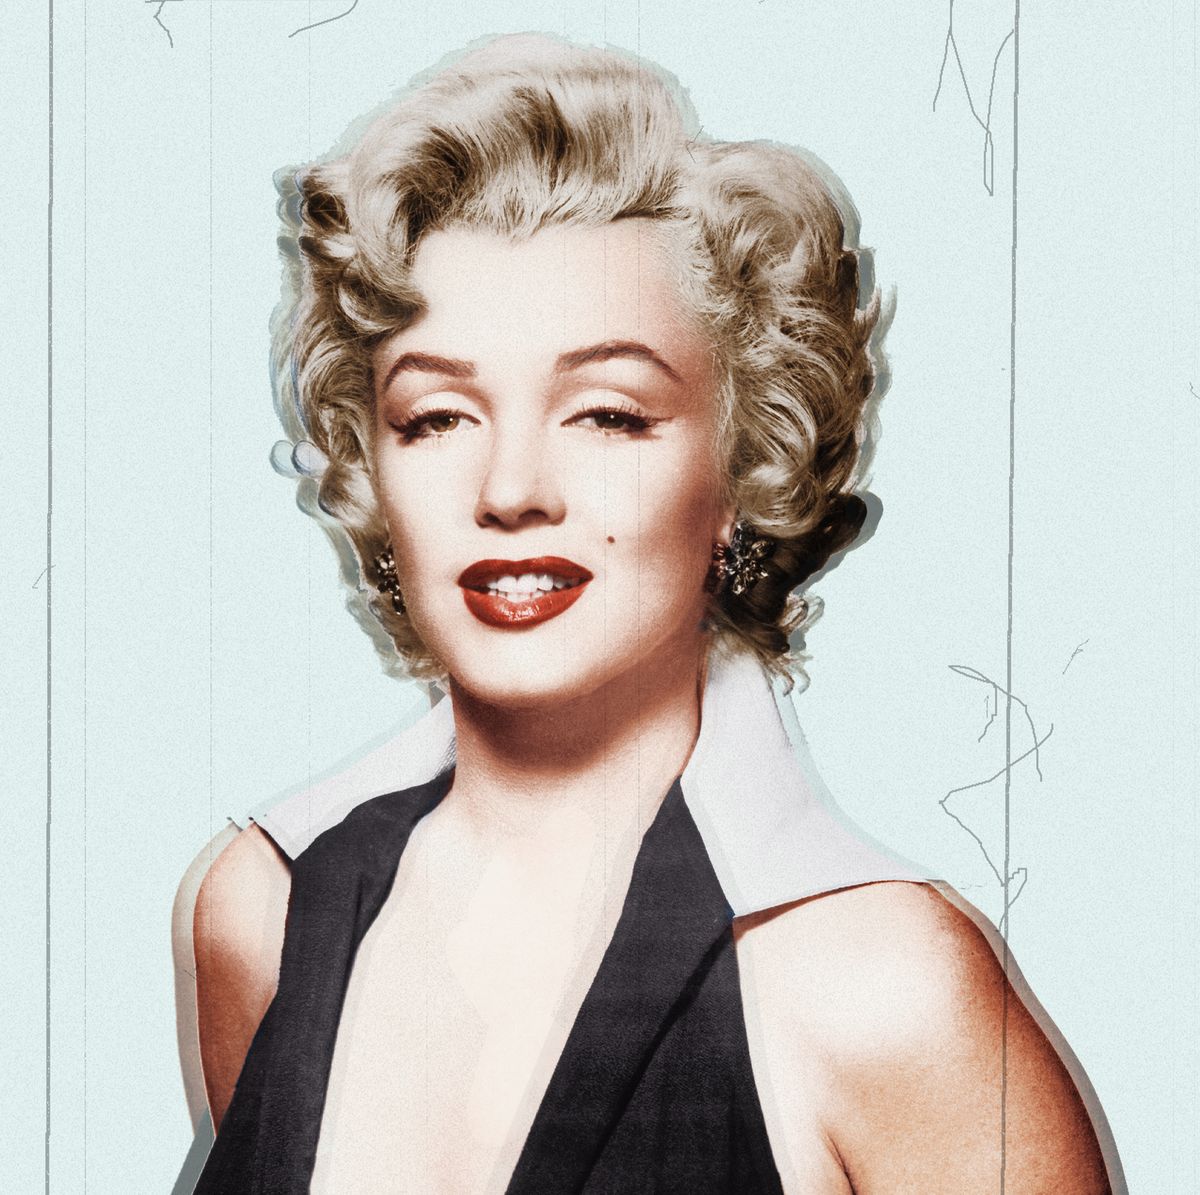 Marilyn Monroe - Wikipedia